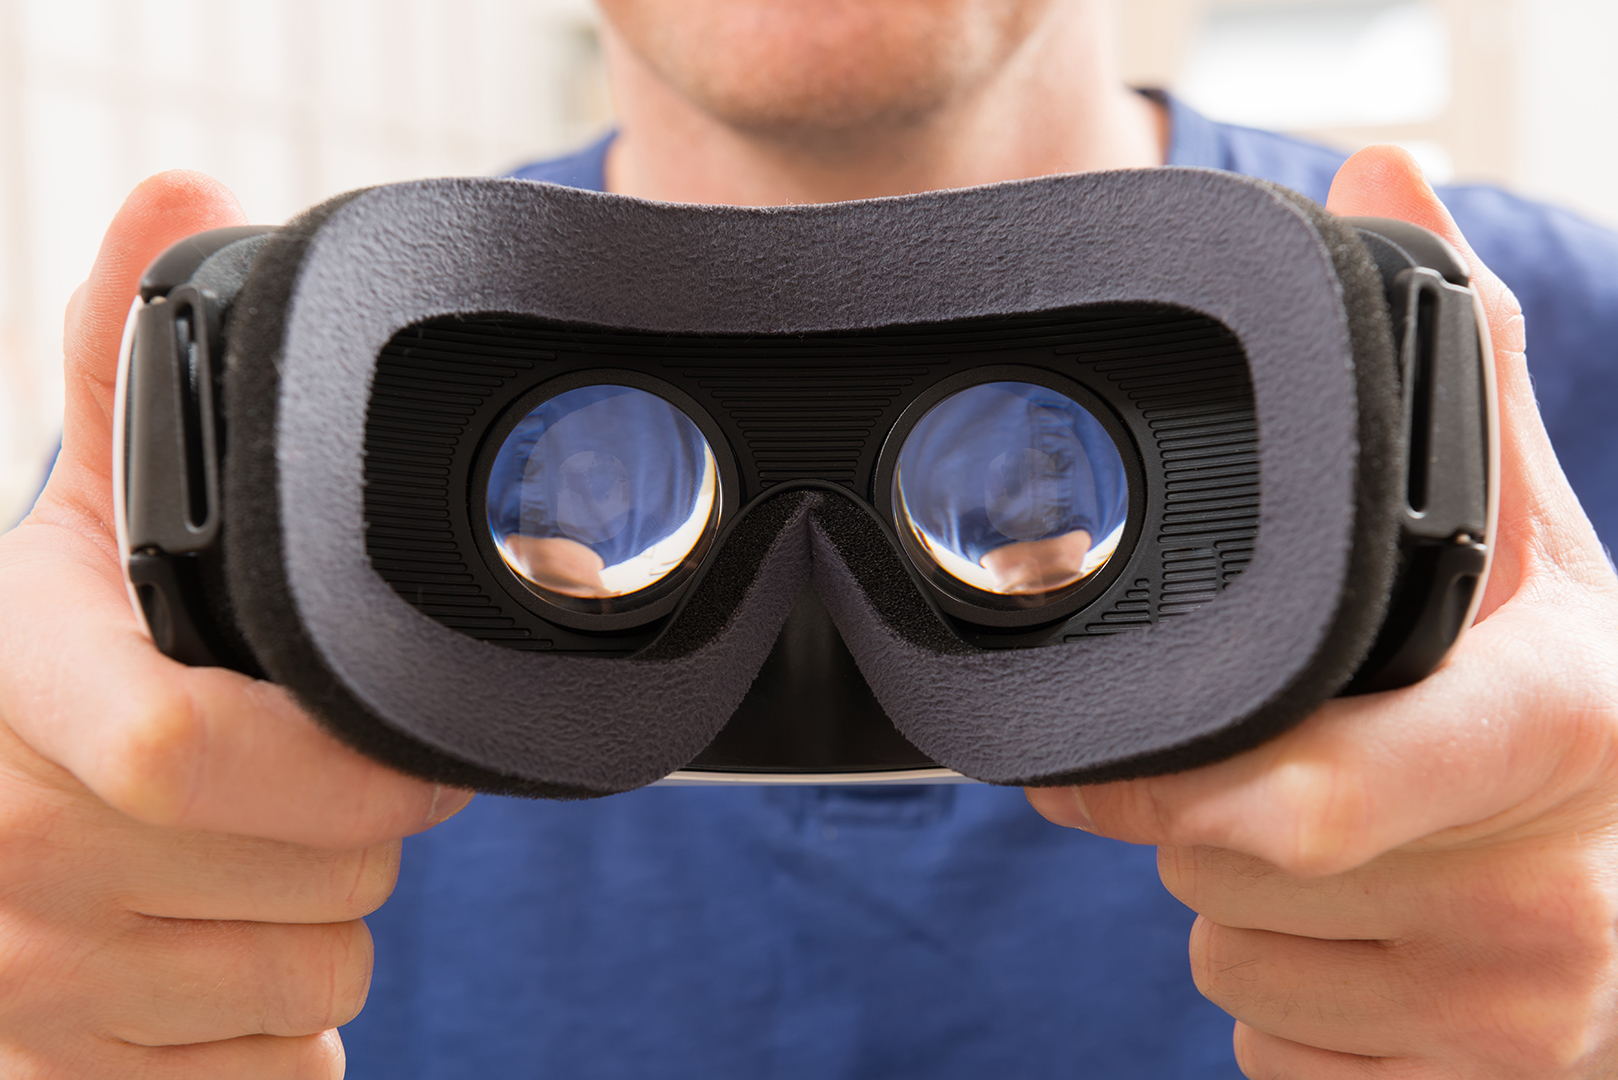 Facebook pretende acabar con el aislamiento cuando se usan cascos de realidad virtual3 min read